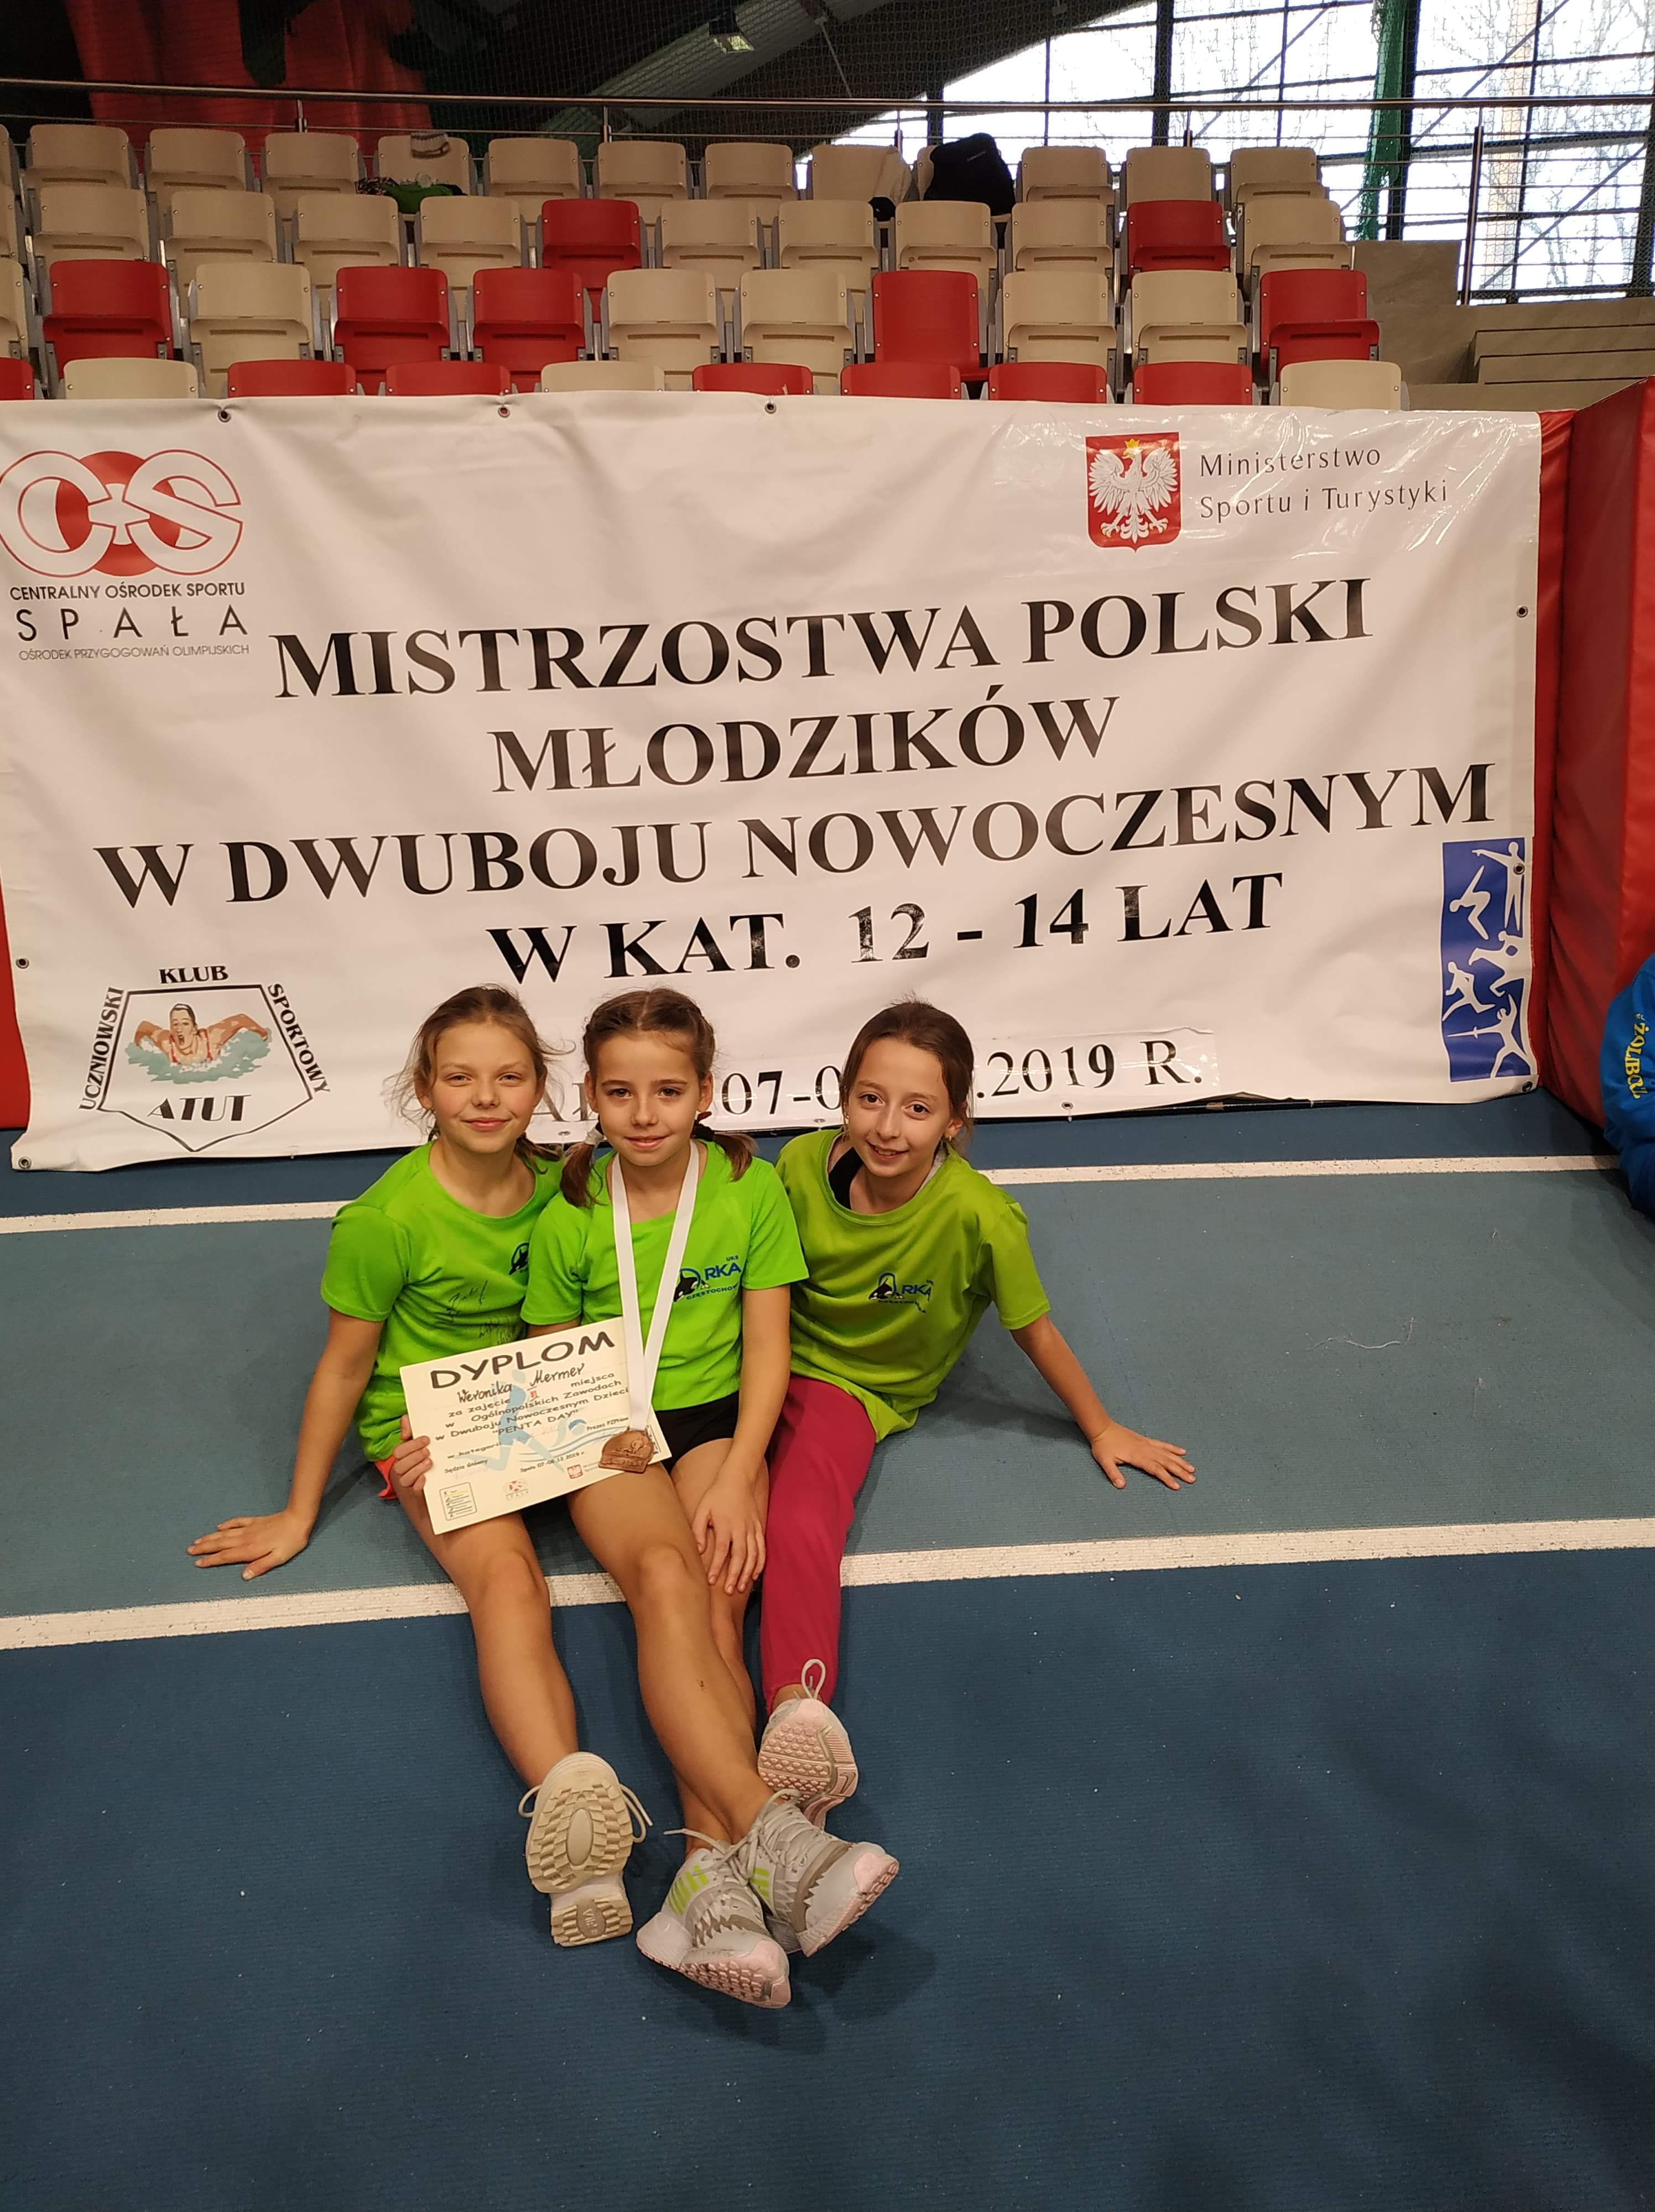 Mistrzostwa Polski Młodzików w Dwuboju Nowoczesnym 07-08.12.2019